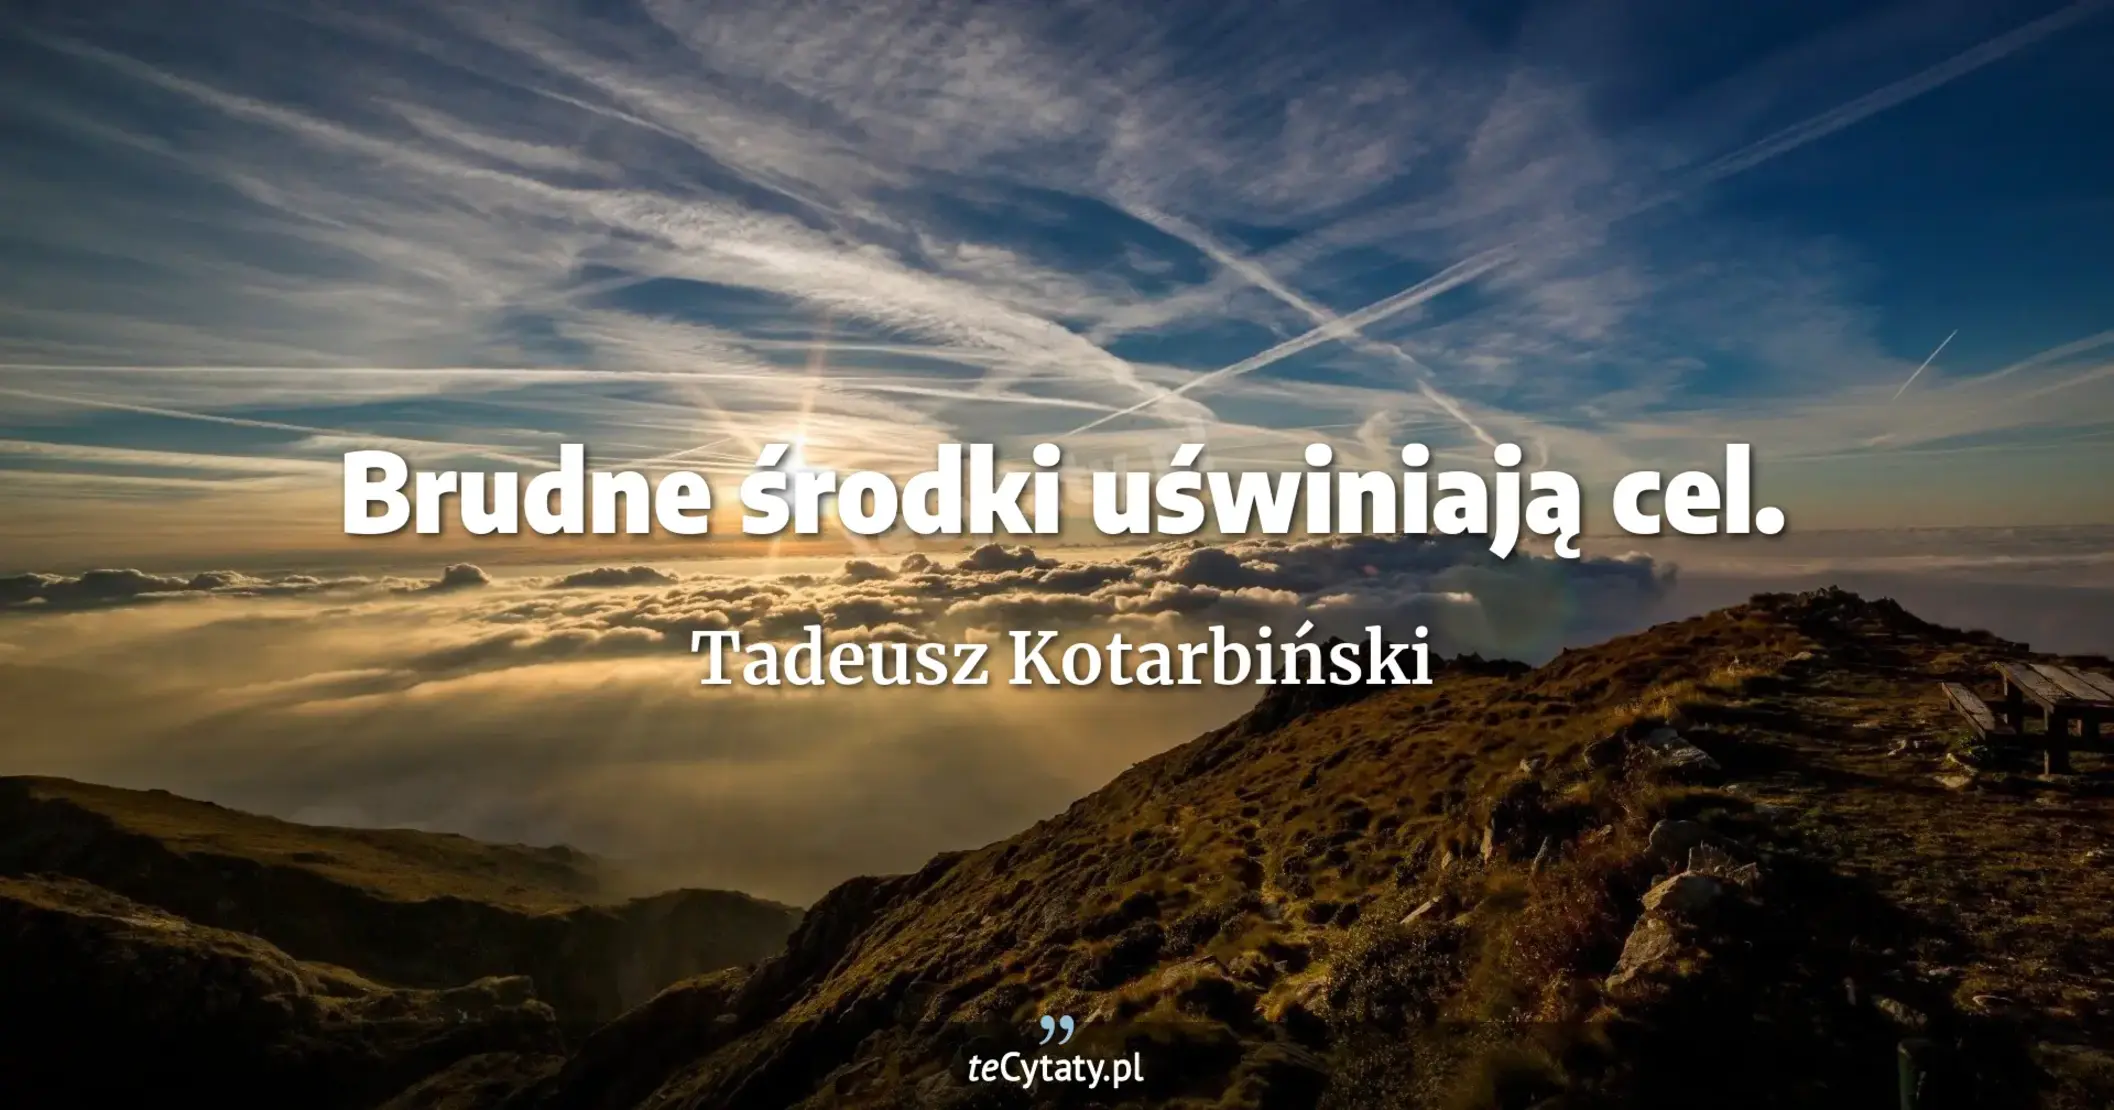 Brudne środki uświniają cel. - Tadeusz Kotarbiński